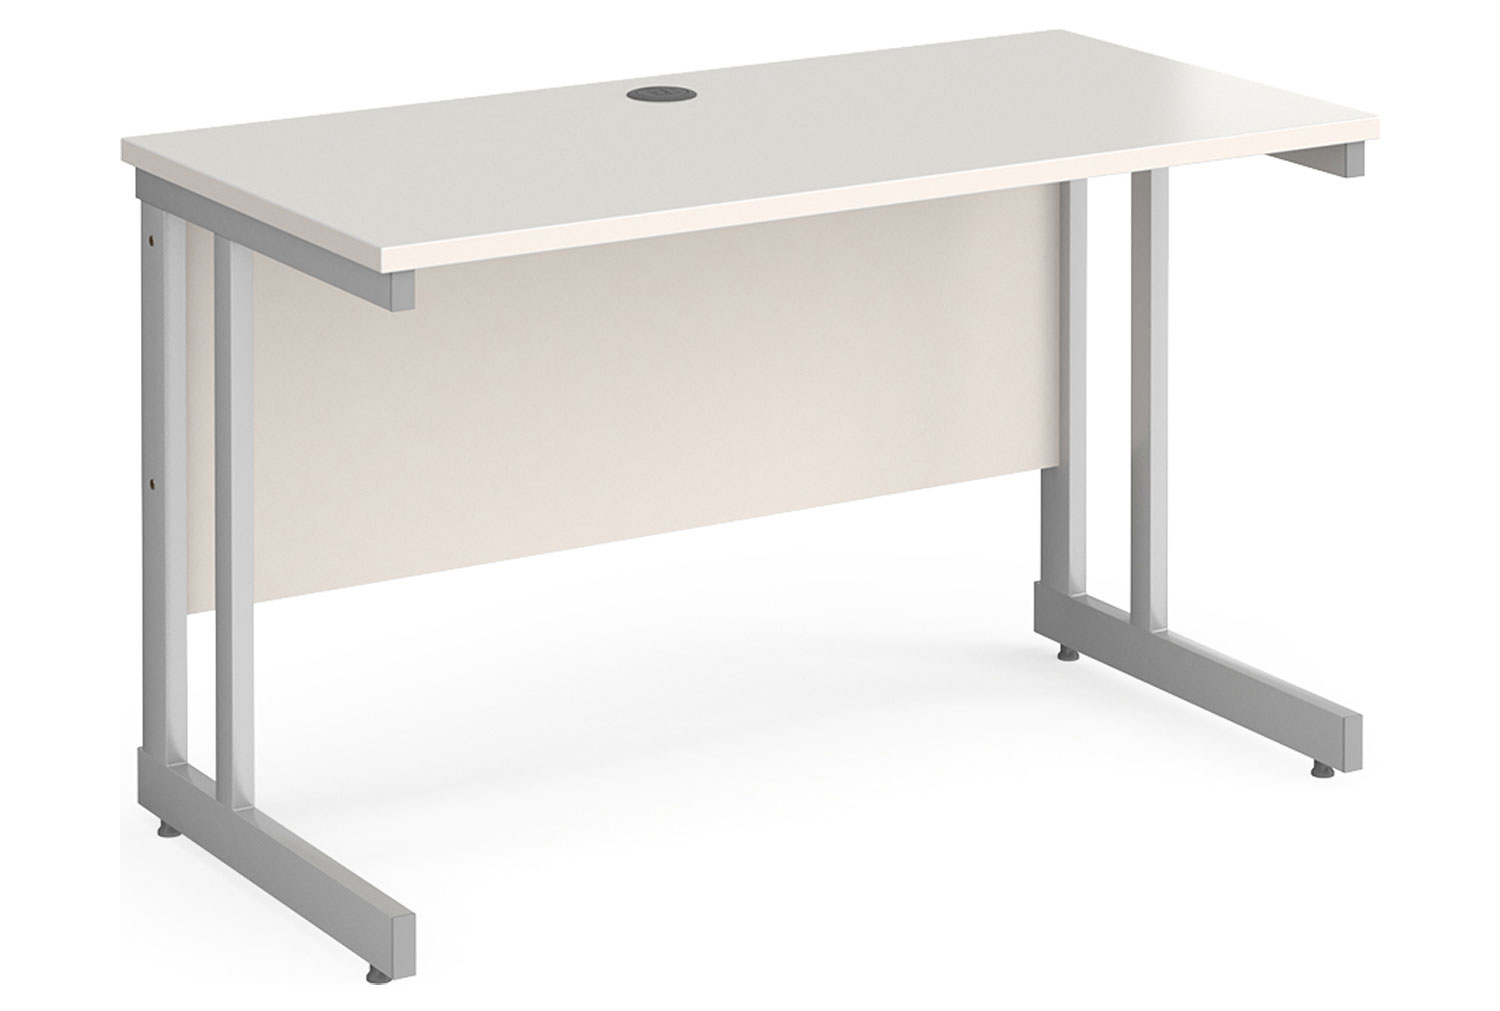 Tully II Narrow Rectangular Office Desk, 120w60dx73h (cm), White